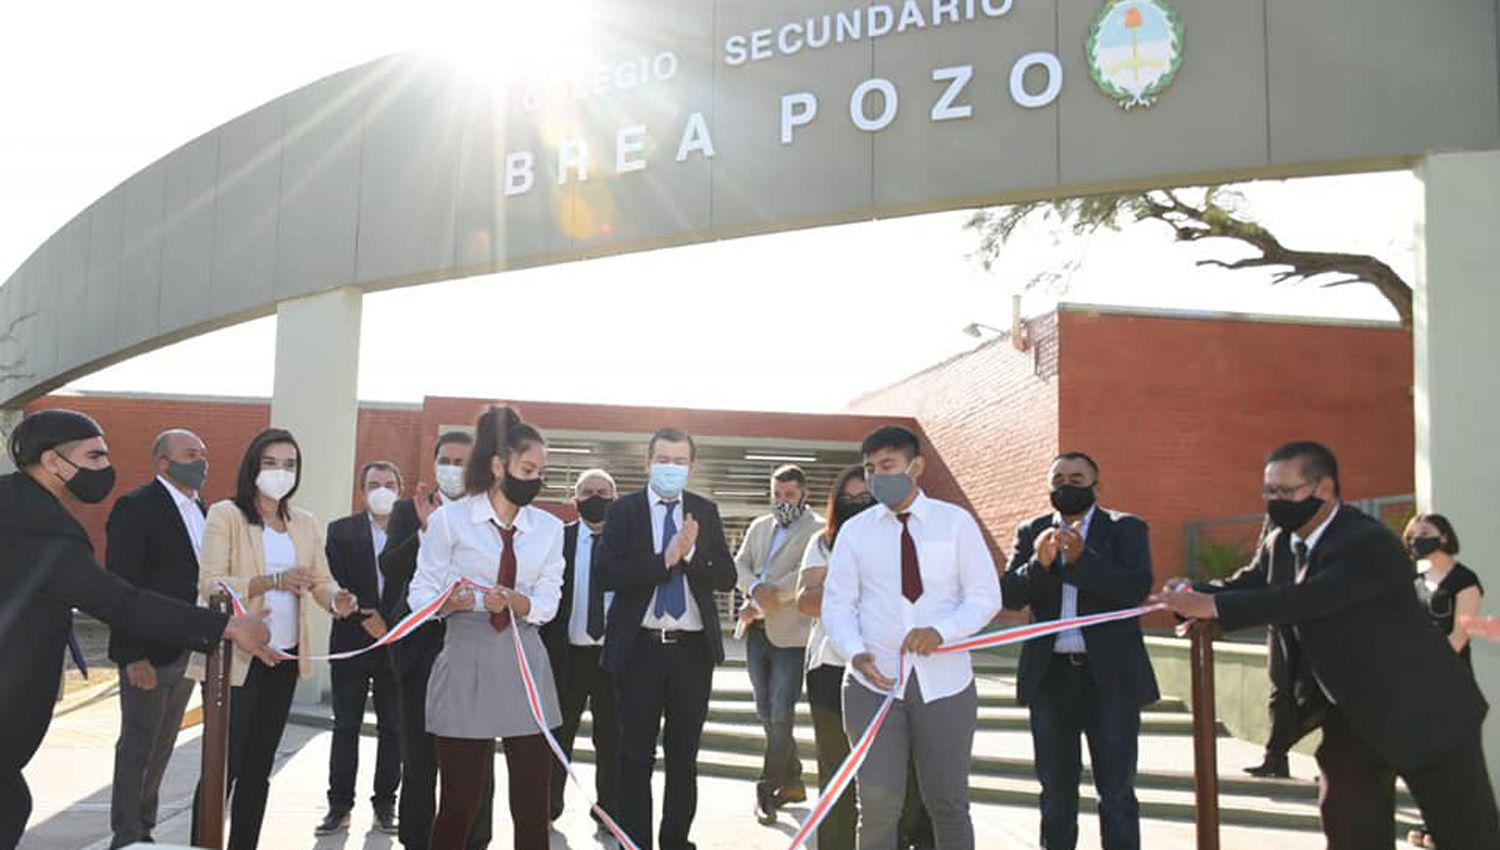 El gobernador Zamora inauguroacute un colegio secundario y 14 viviendas sociales en Brea Pozo